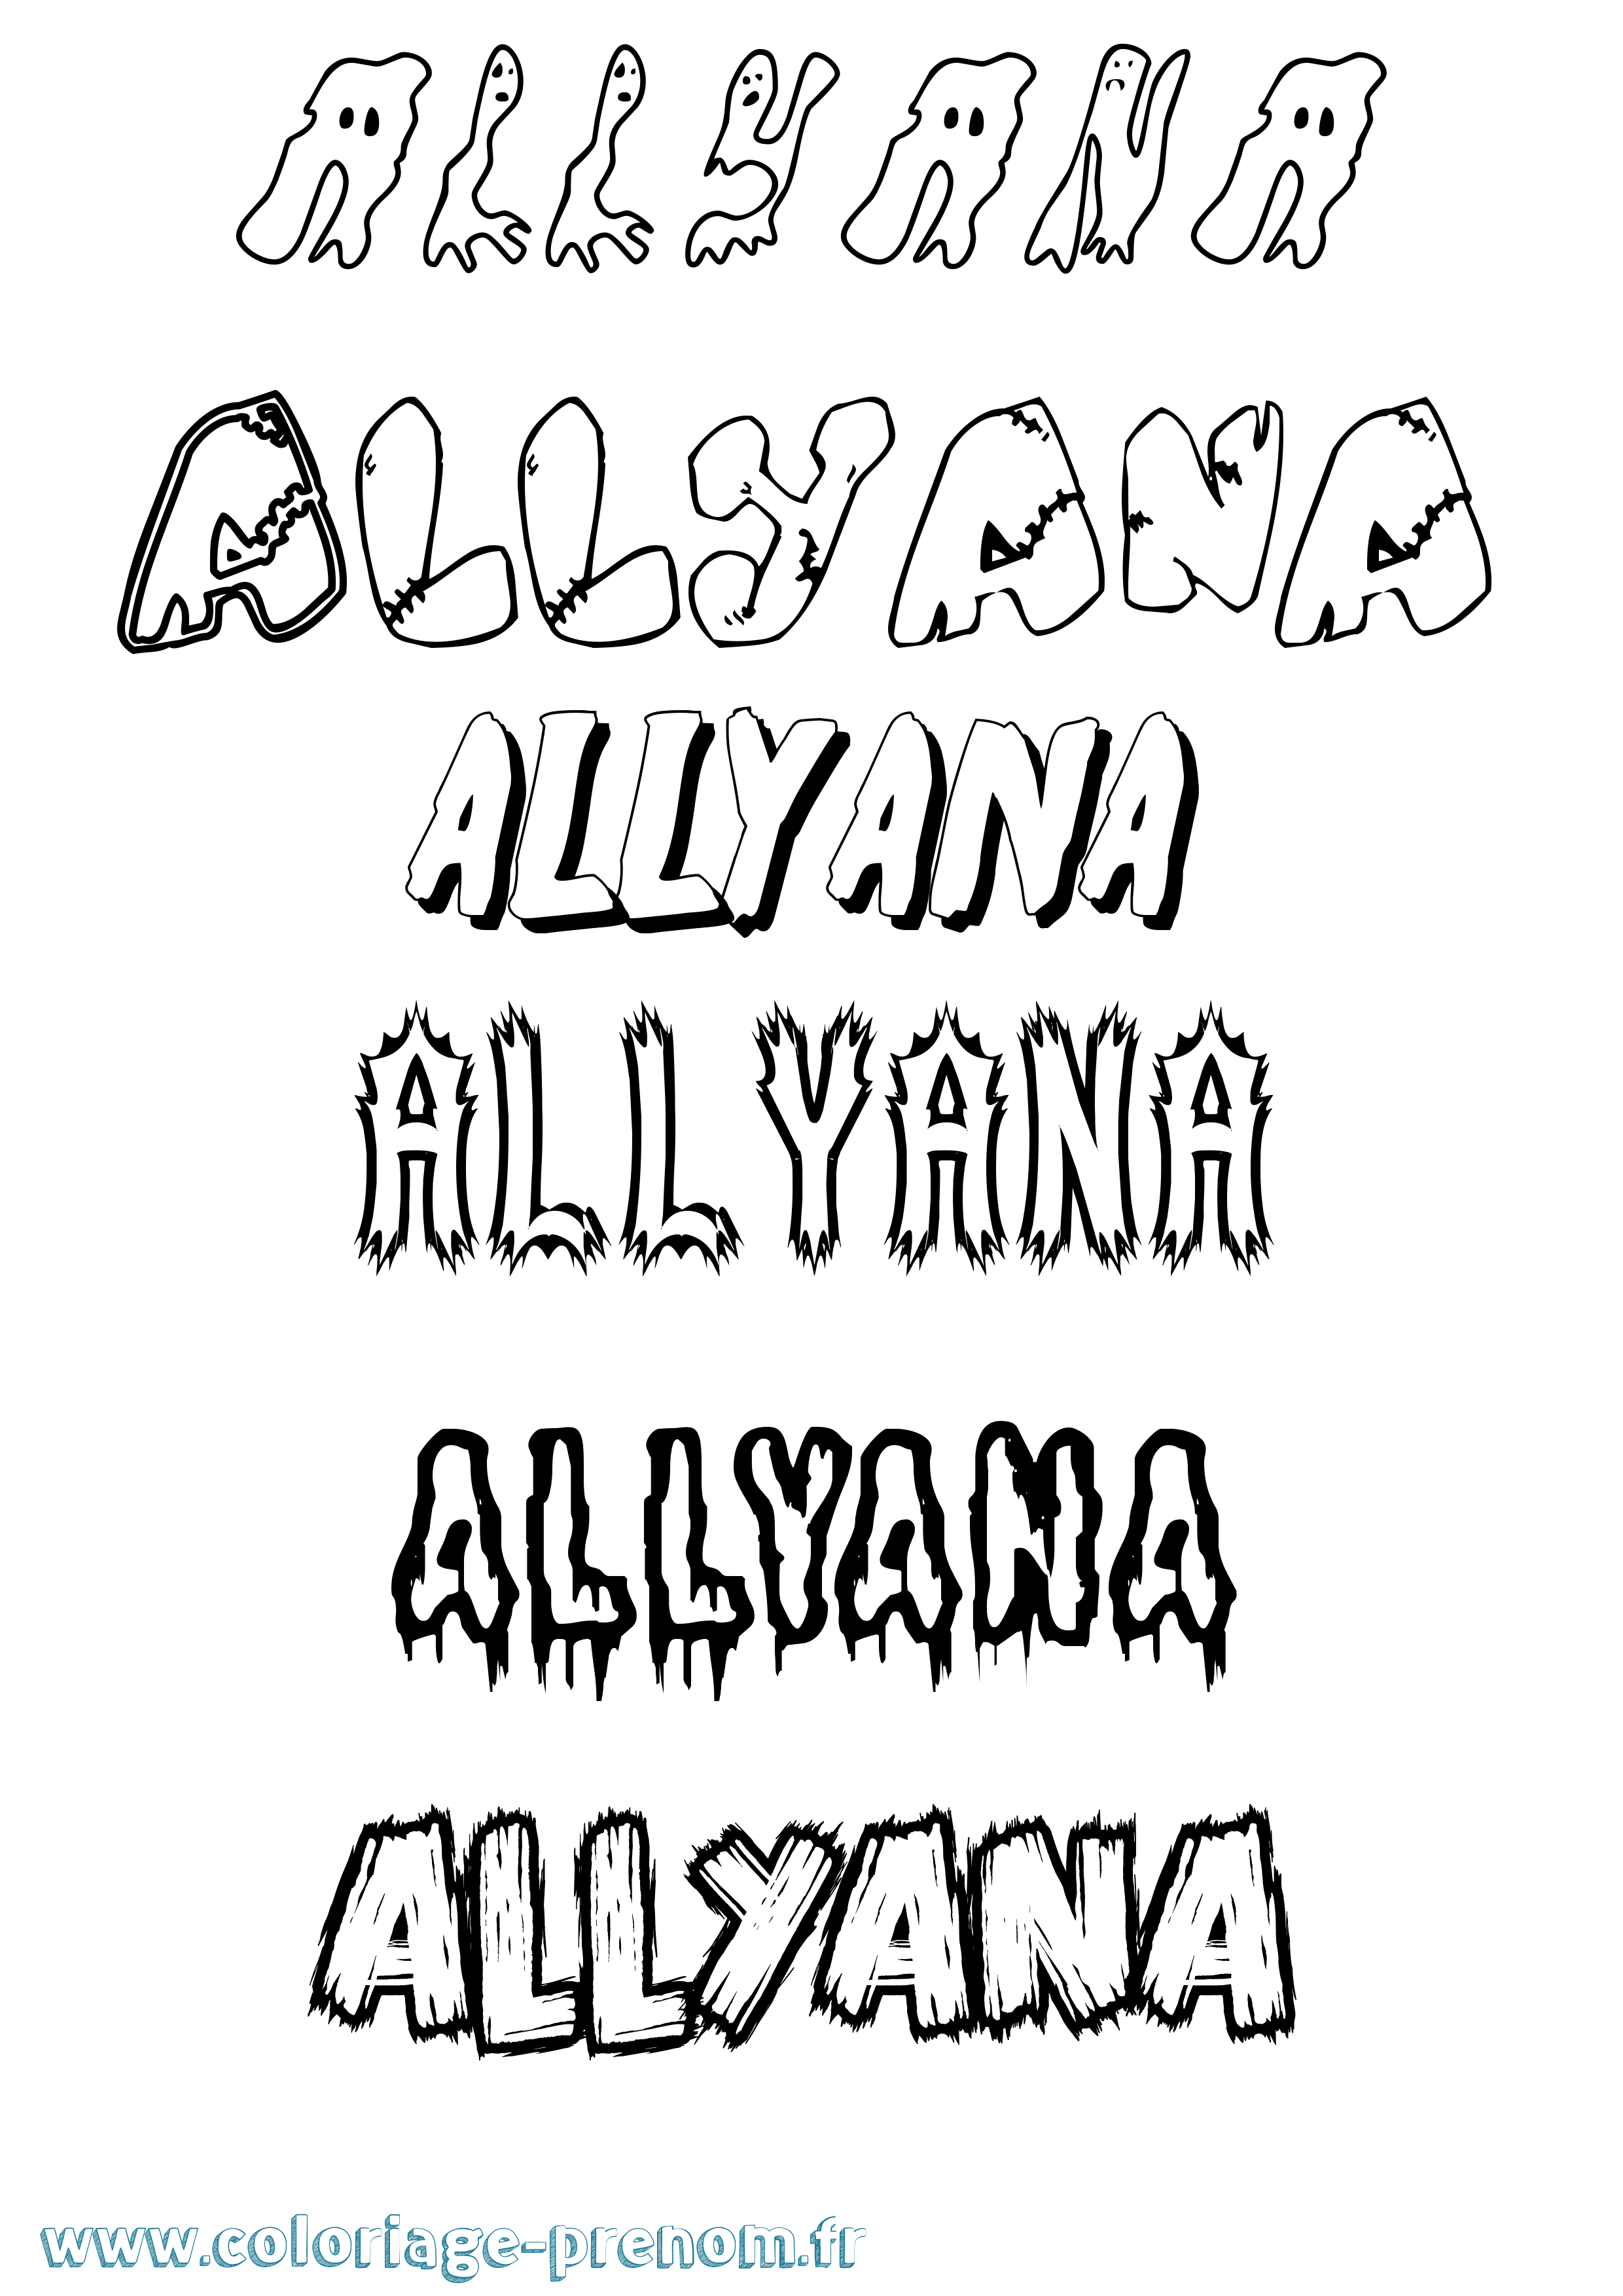 Coloriage prénom Allyana Frisson